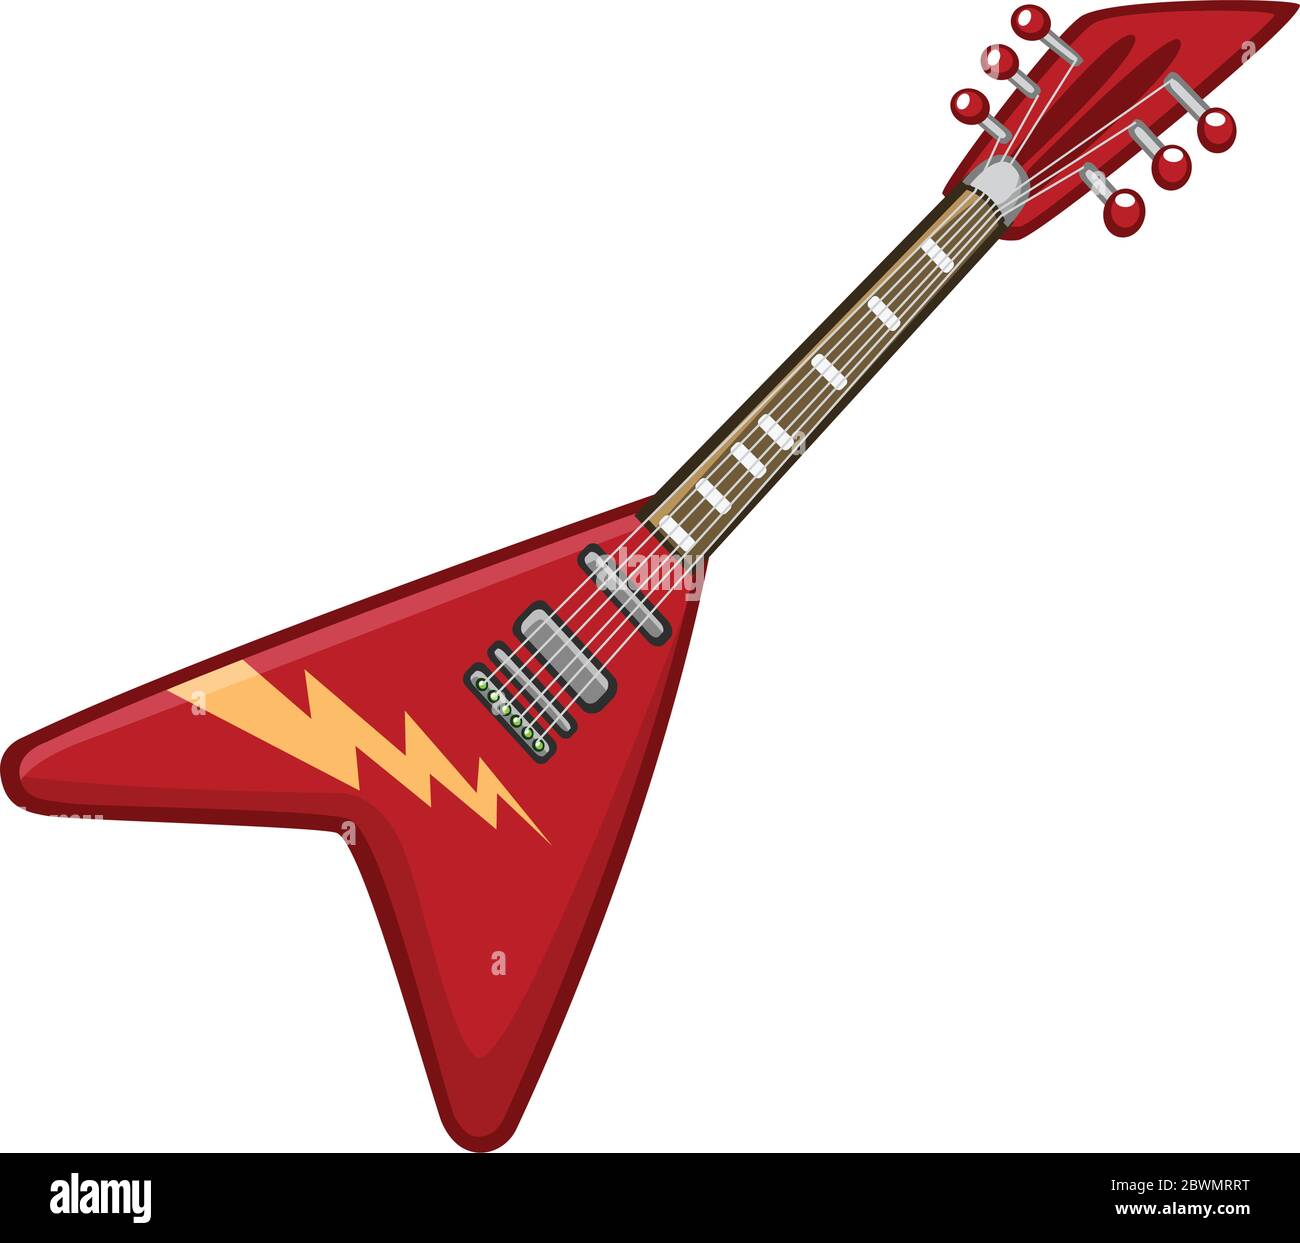 Icono de dibujos de guitarra eléctrica. vectorial de metal de concierto o rock-n-roll electro guitarra color rojo forma de triángulo Imagen Vector de stock Alamy